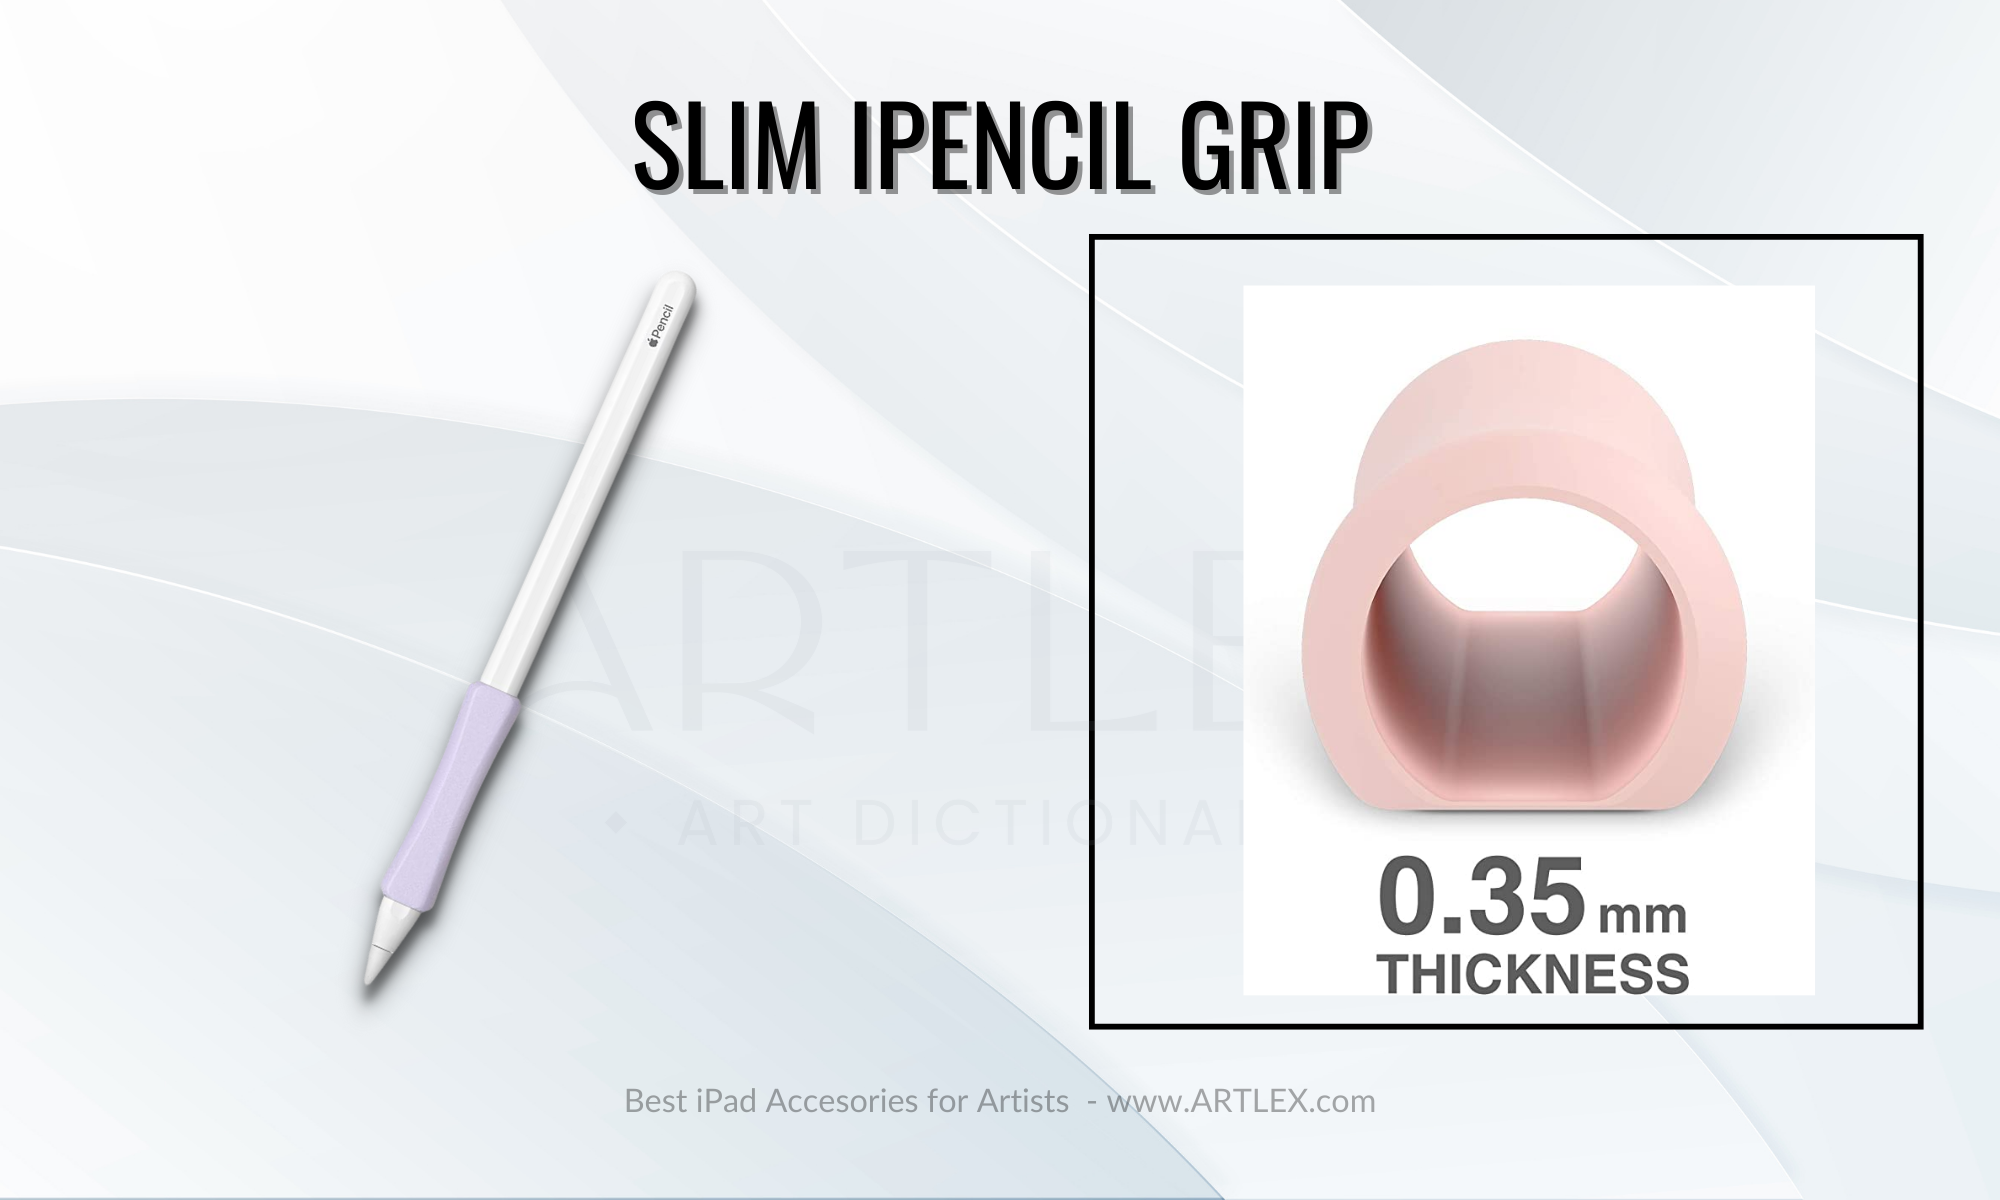 Meilleure prise pour l'Apple Pencil 2ème génération - Slim iPencil Grip